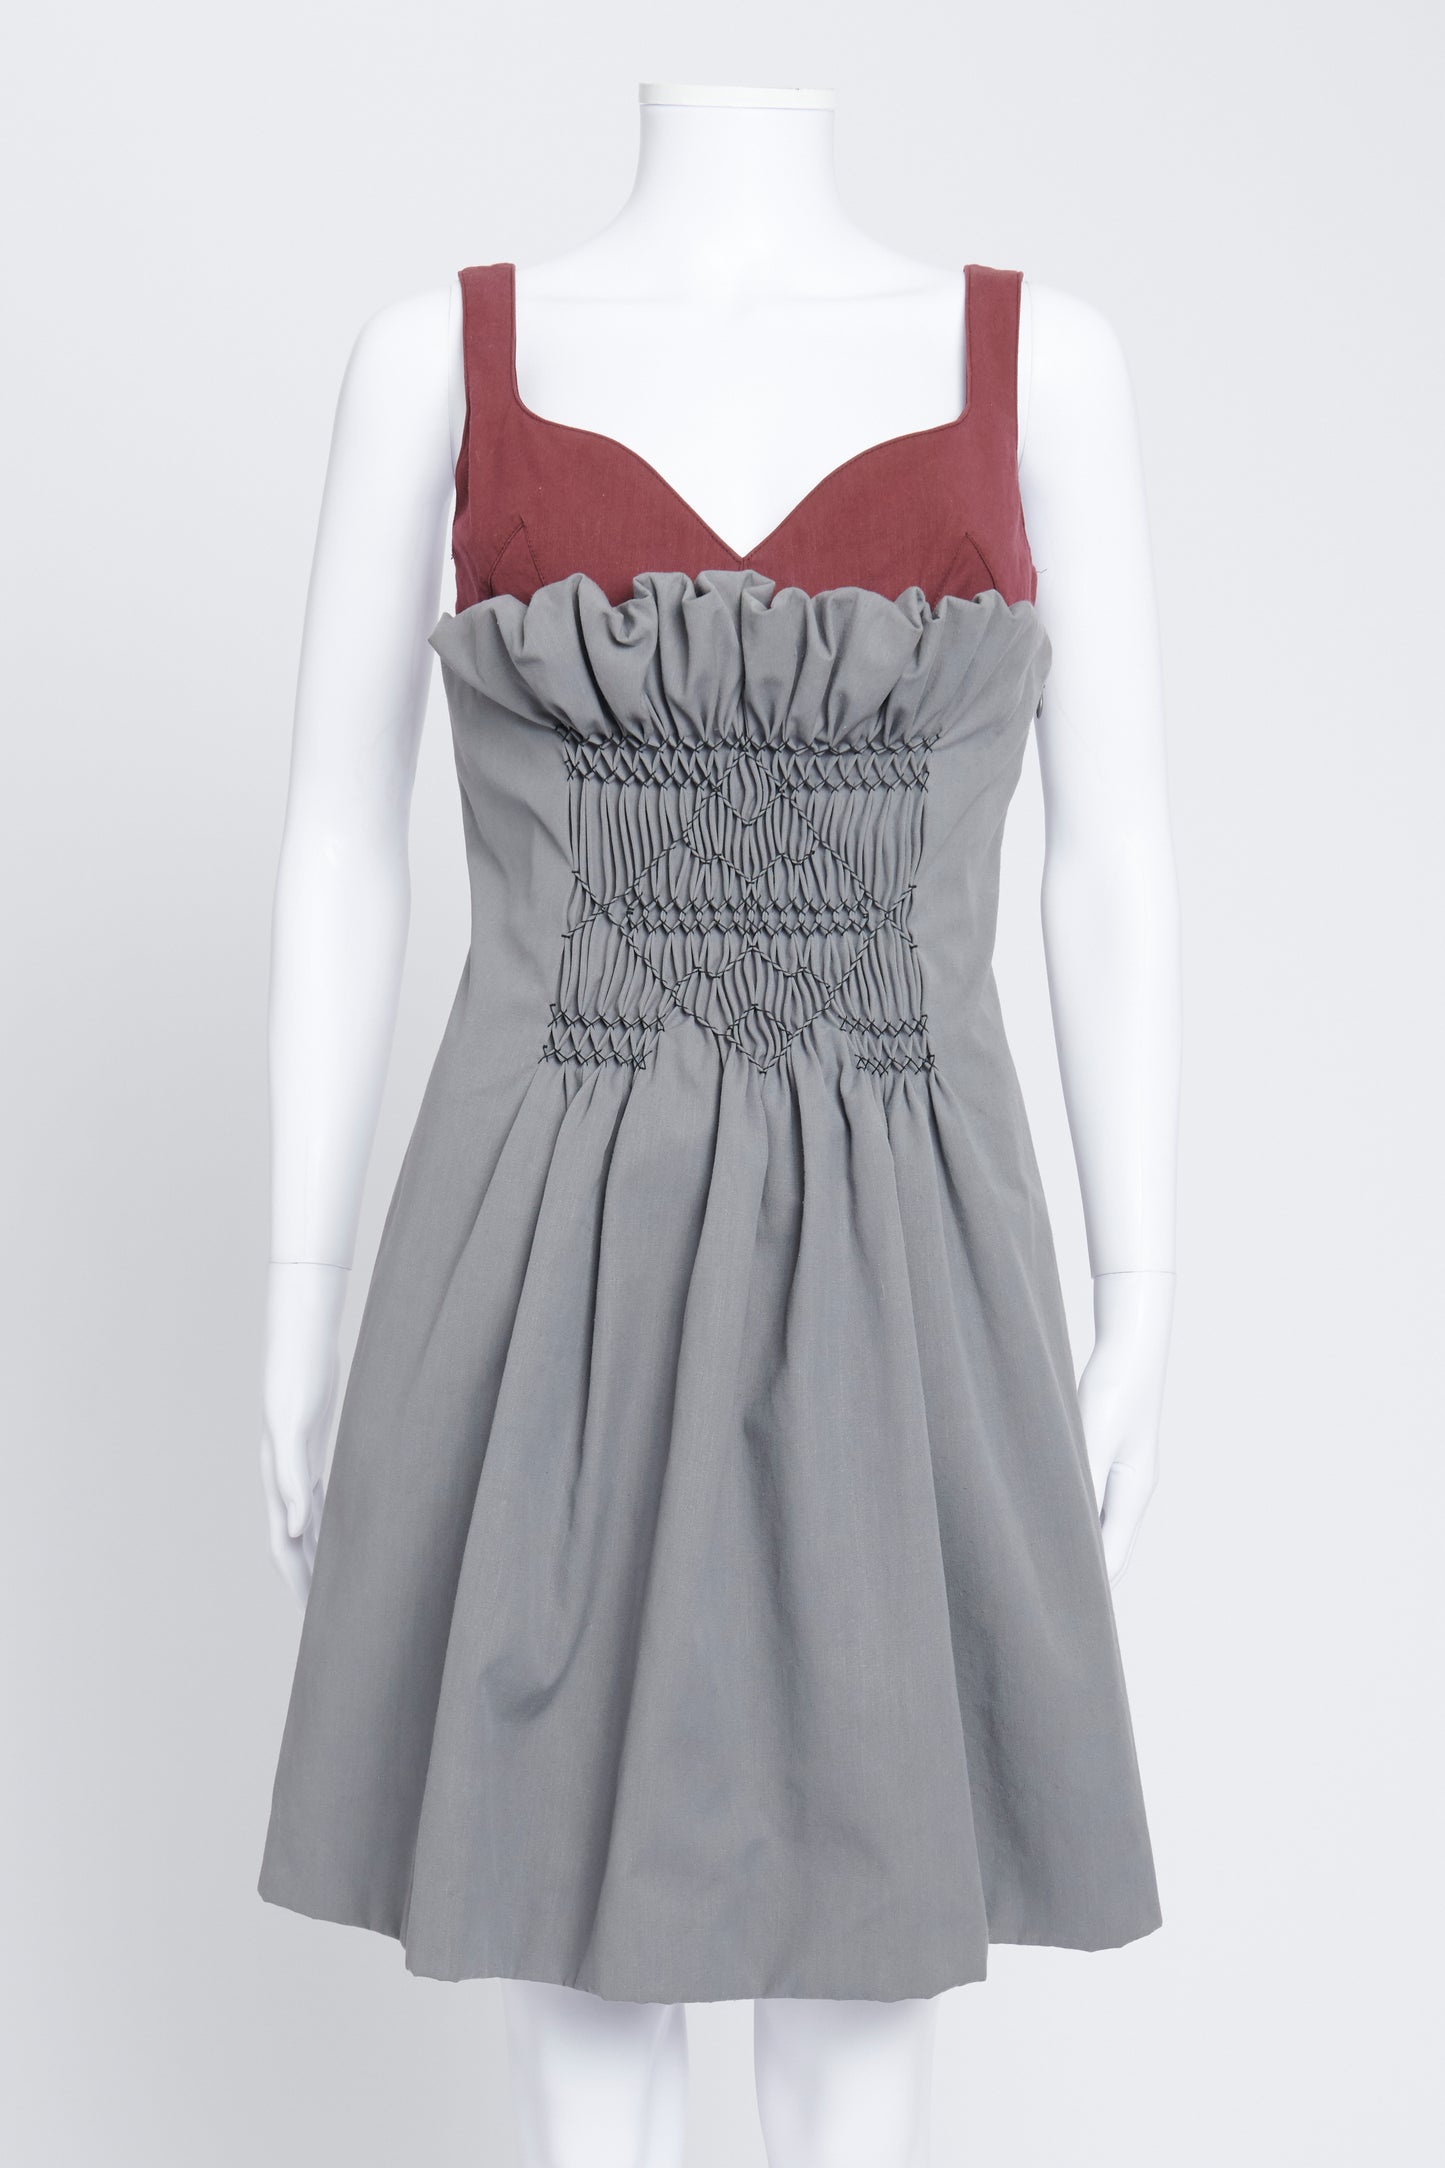 2012 Grey and Maroon Sleeveless Mini Dress IT 42